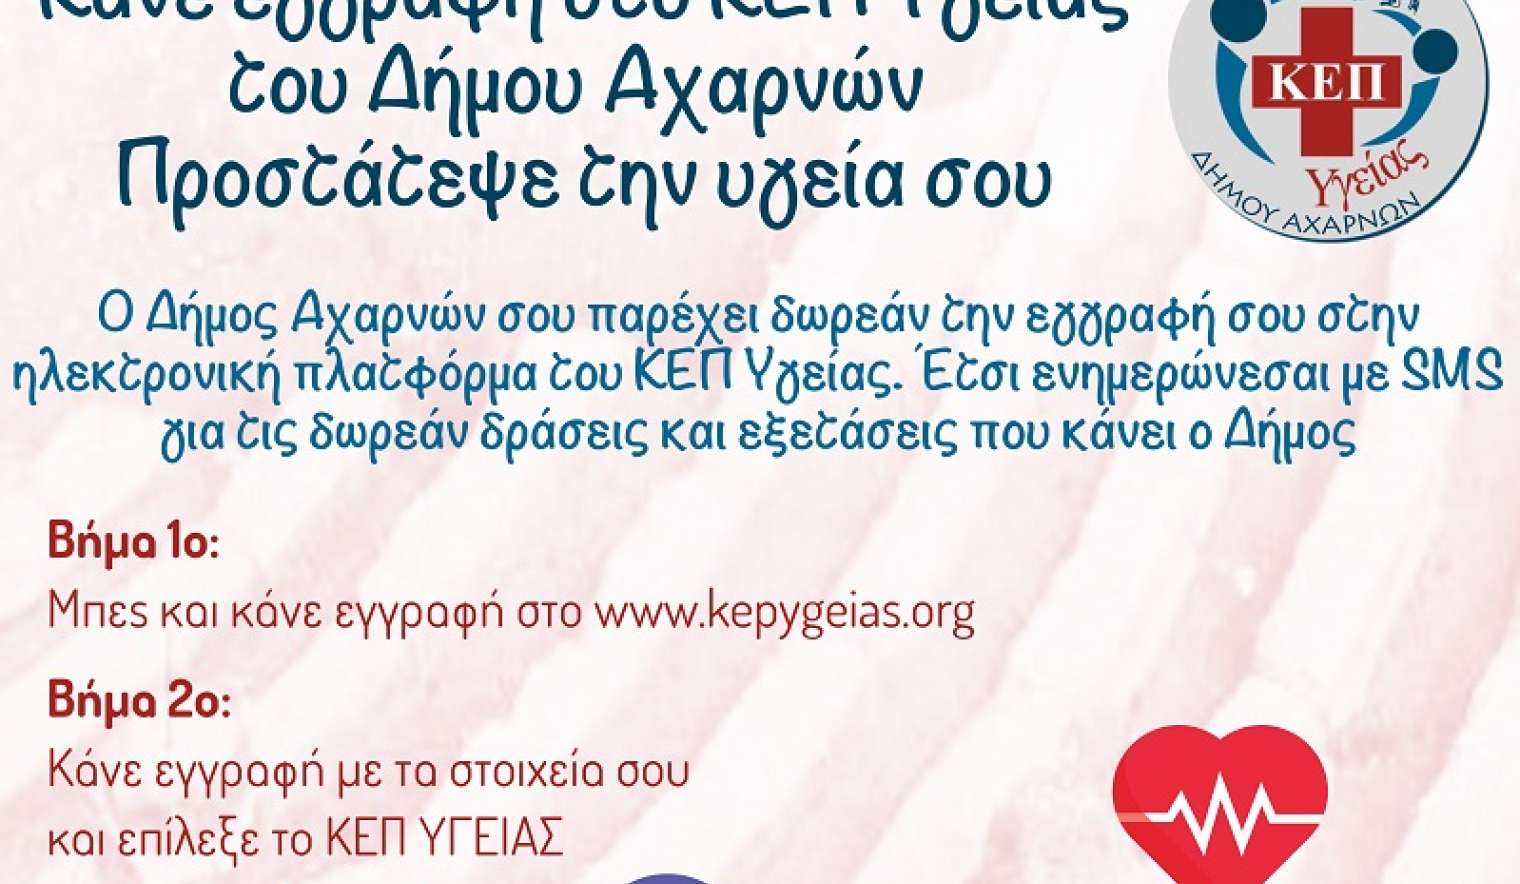 ΚΕΠ Υγείας Δήμου Αχαρνών: Μια νέα δομή με στόχο την ενημέρωση και την παροχή υπηρεσιών πρόληψης